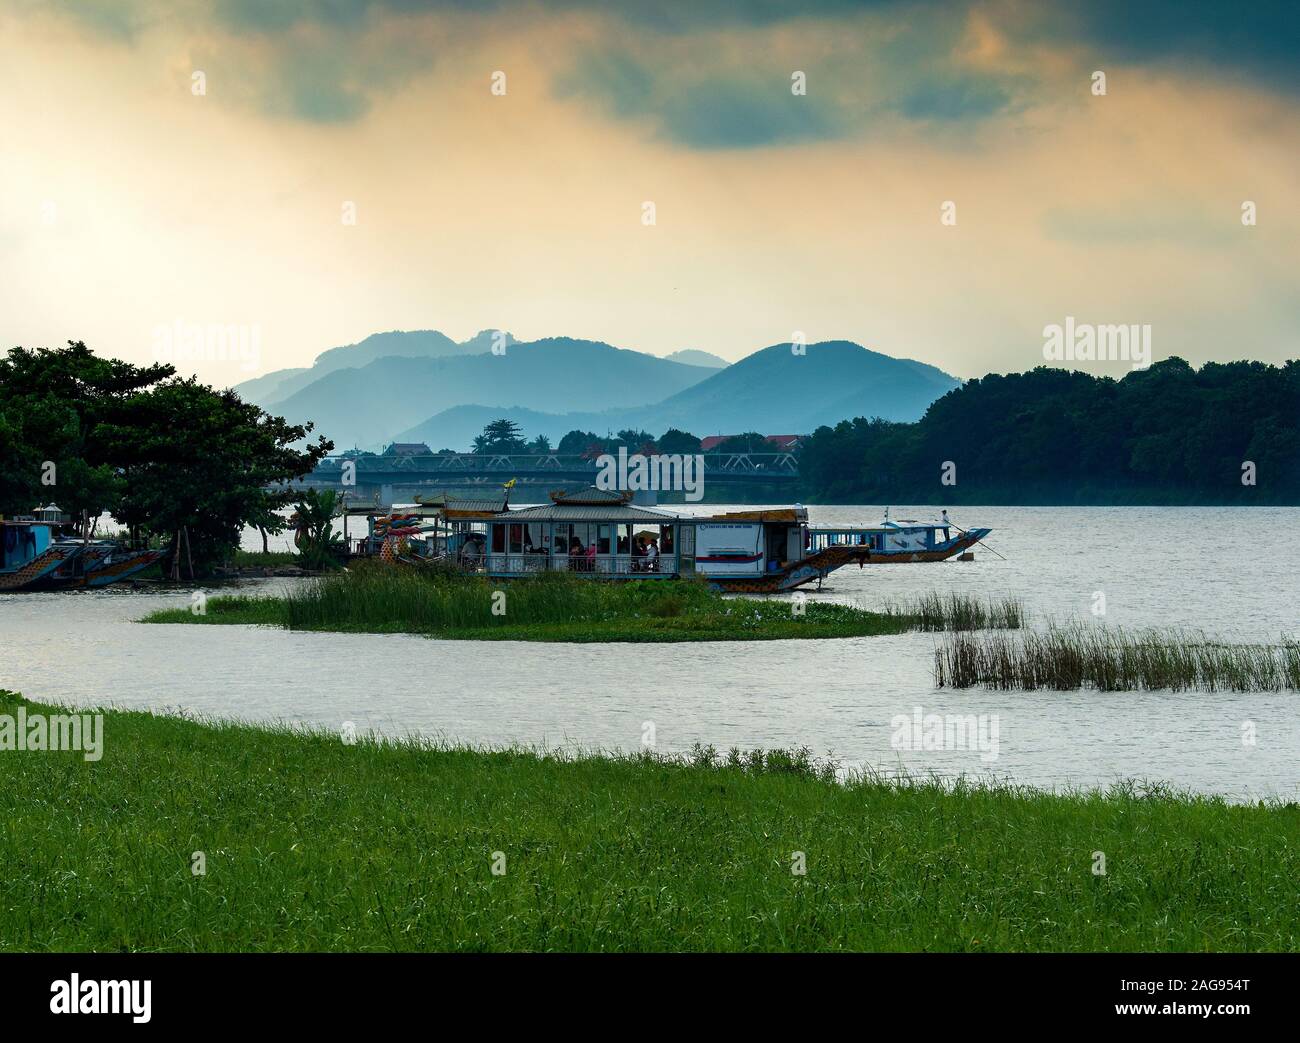 Bateaux à aubes amarrés sur la rivière des parfums à Hue, au Vietnam Banque D'Images